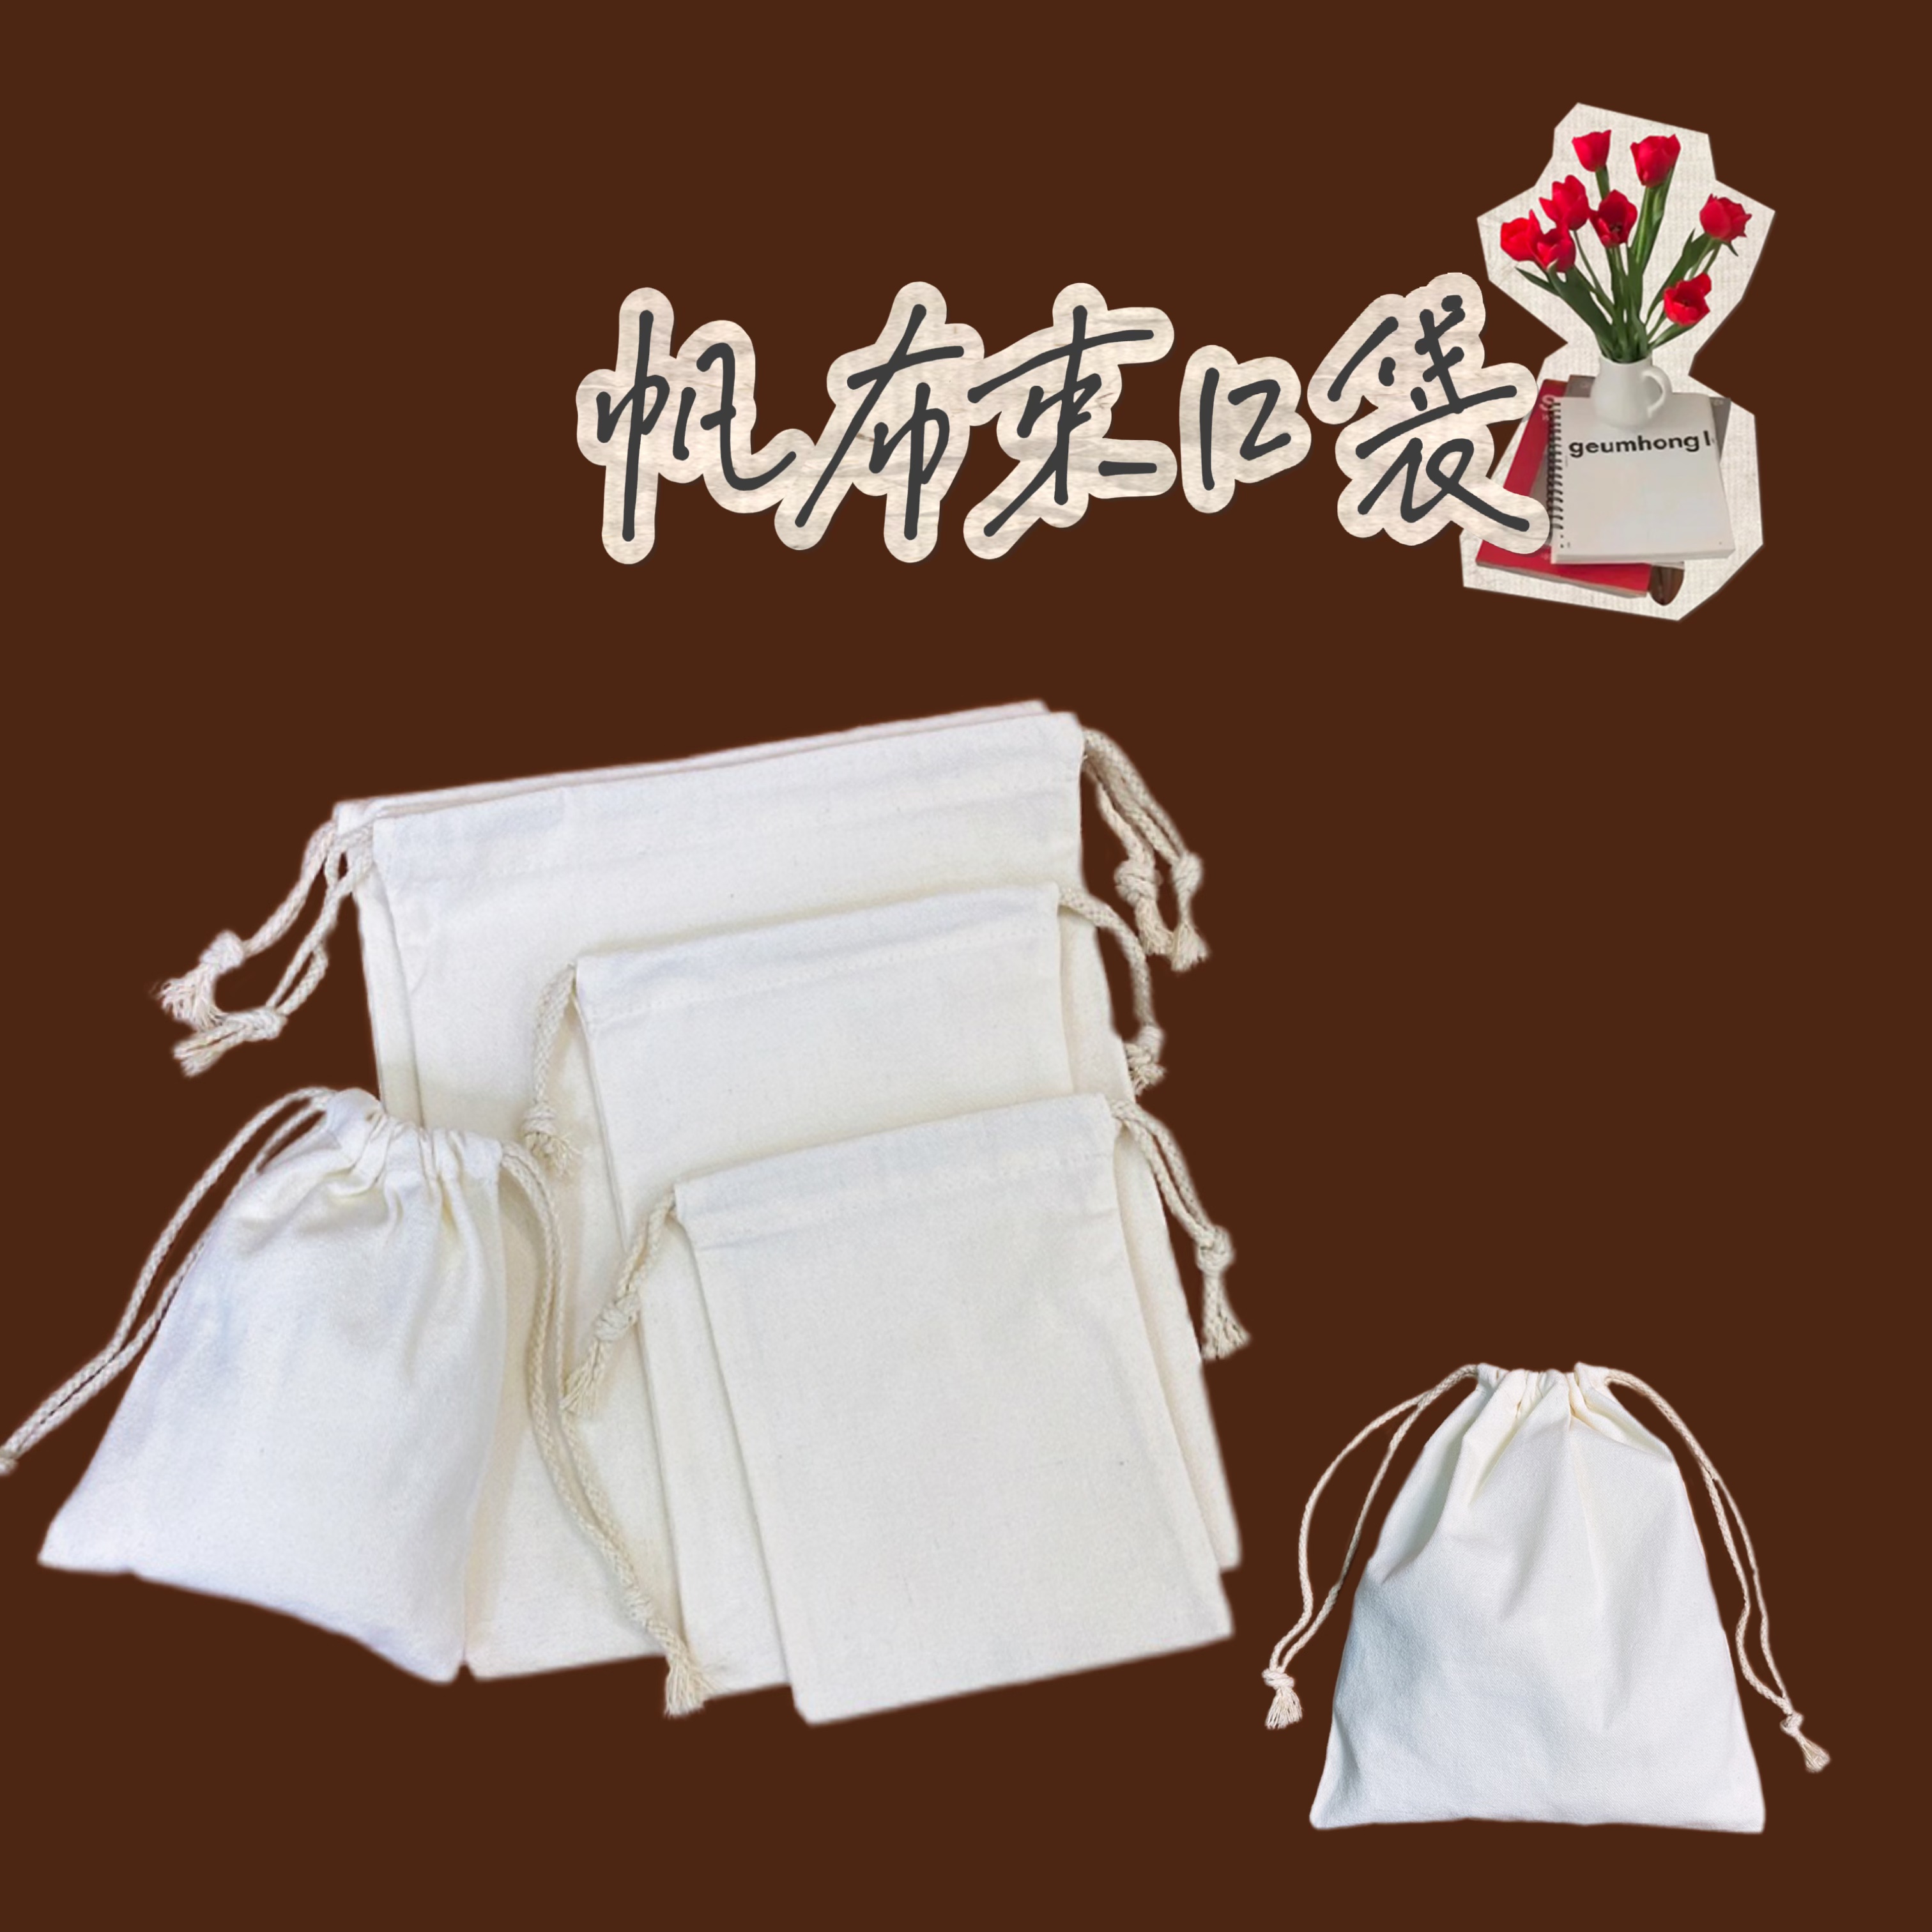 空白帆布卡通化妝包 自製DIY手作收納袋 棉質束口袋 (8.3折)